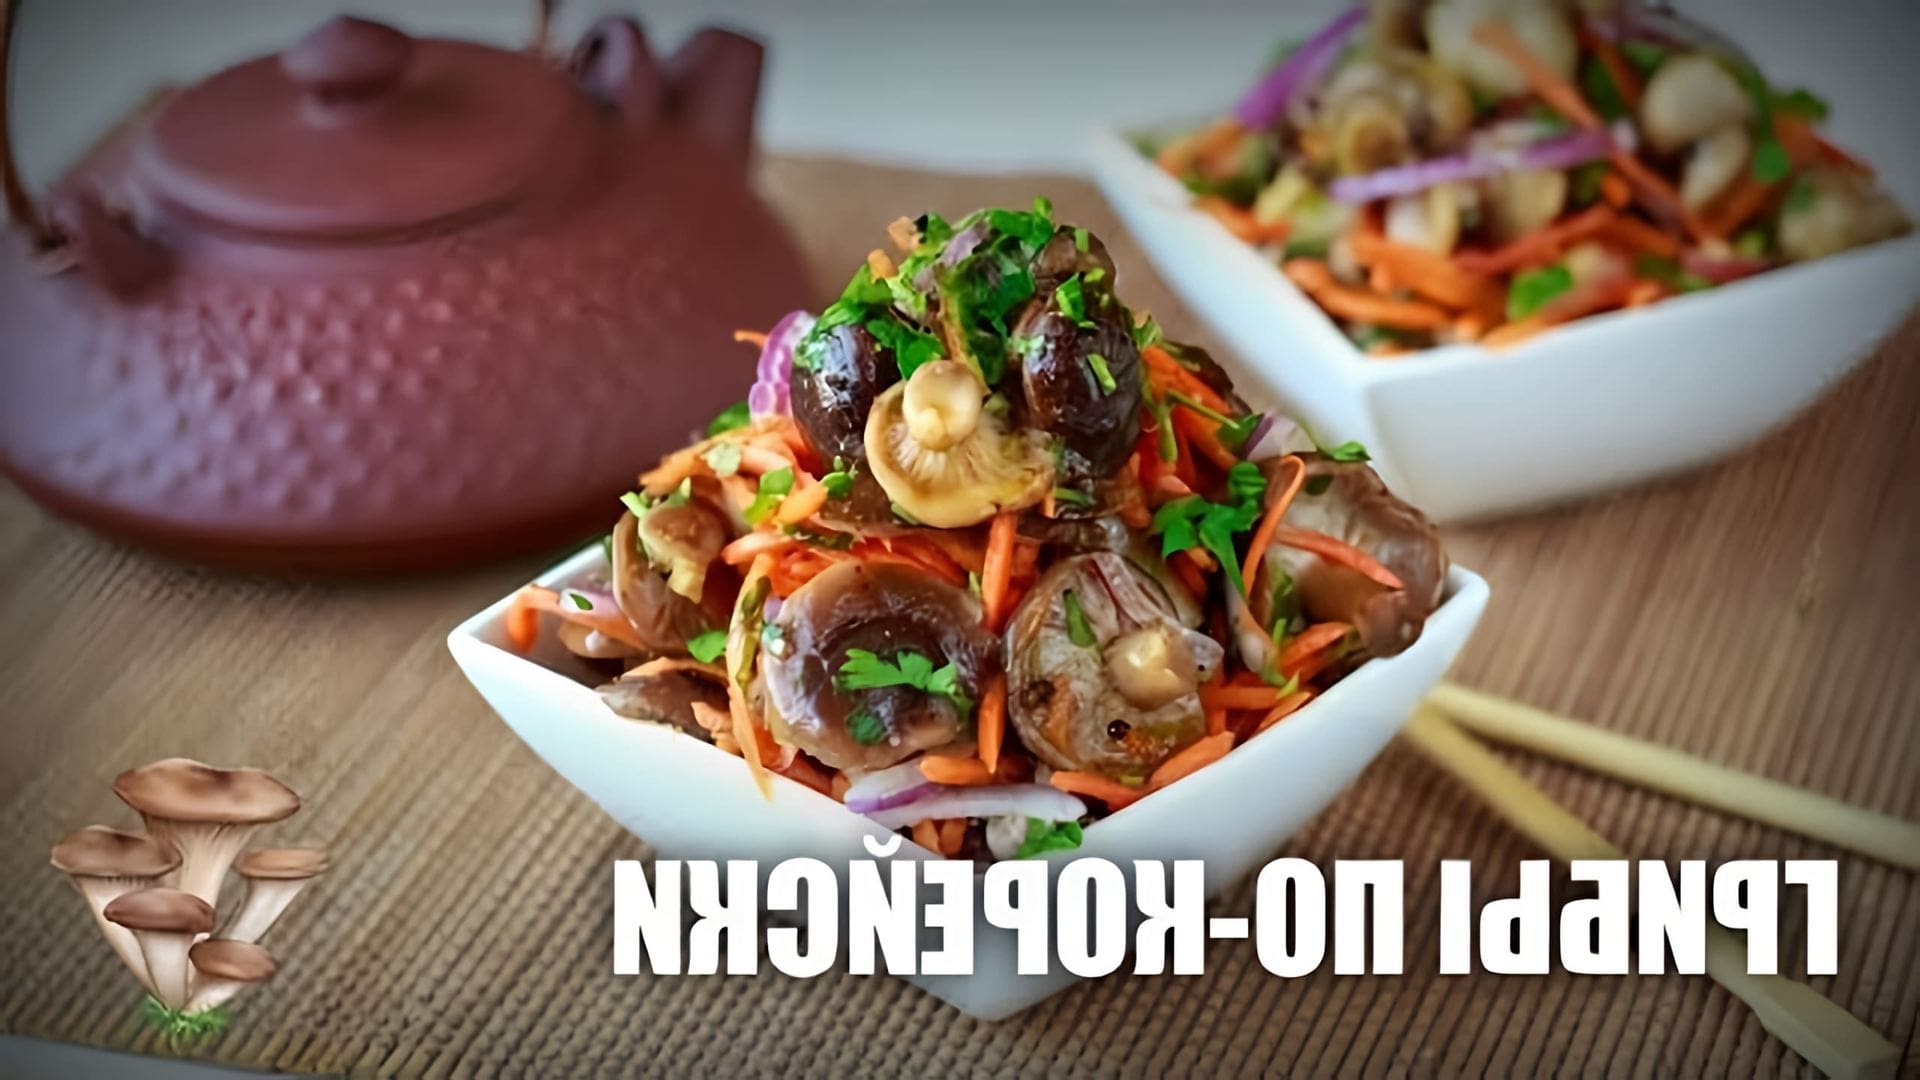 В этом видео демонстрируется рецепт приготовления грибов по-корейски